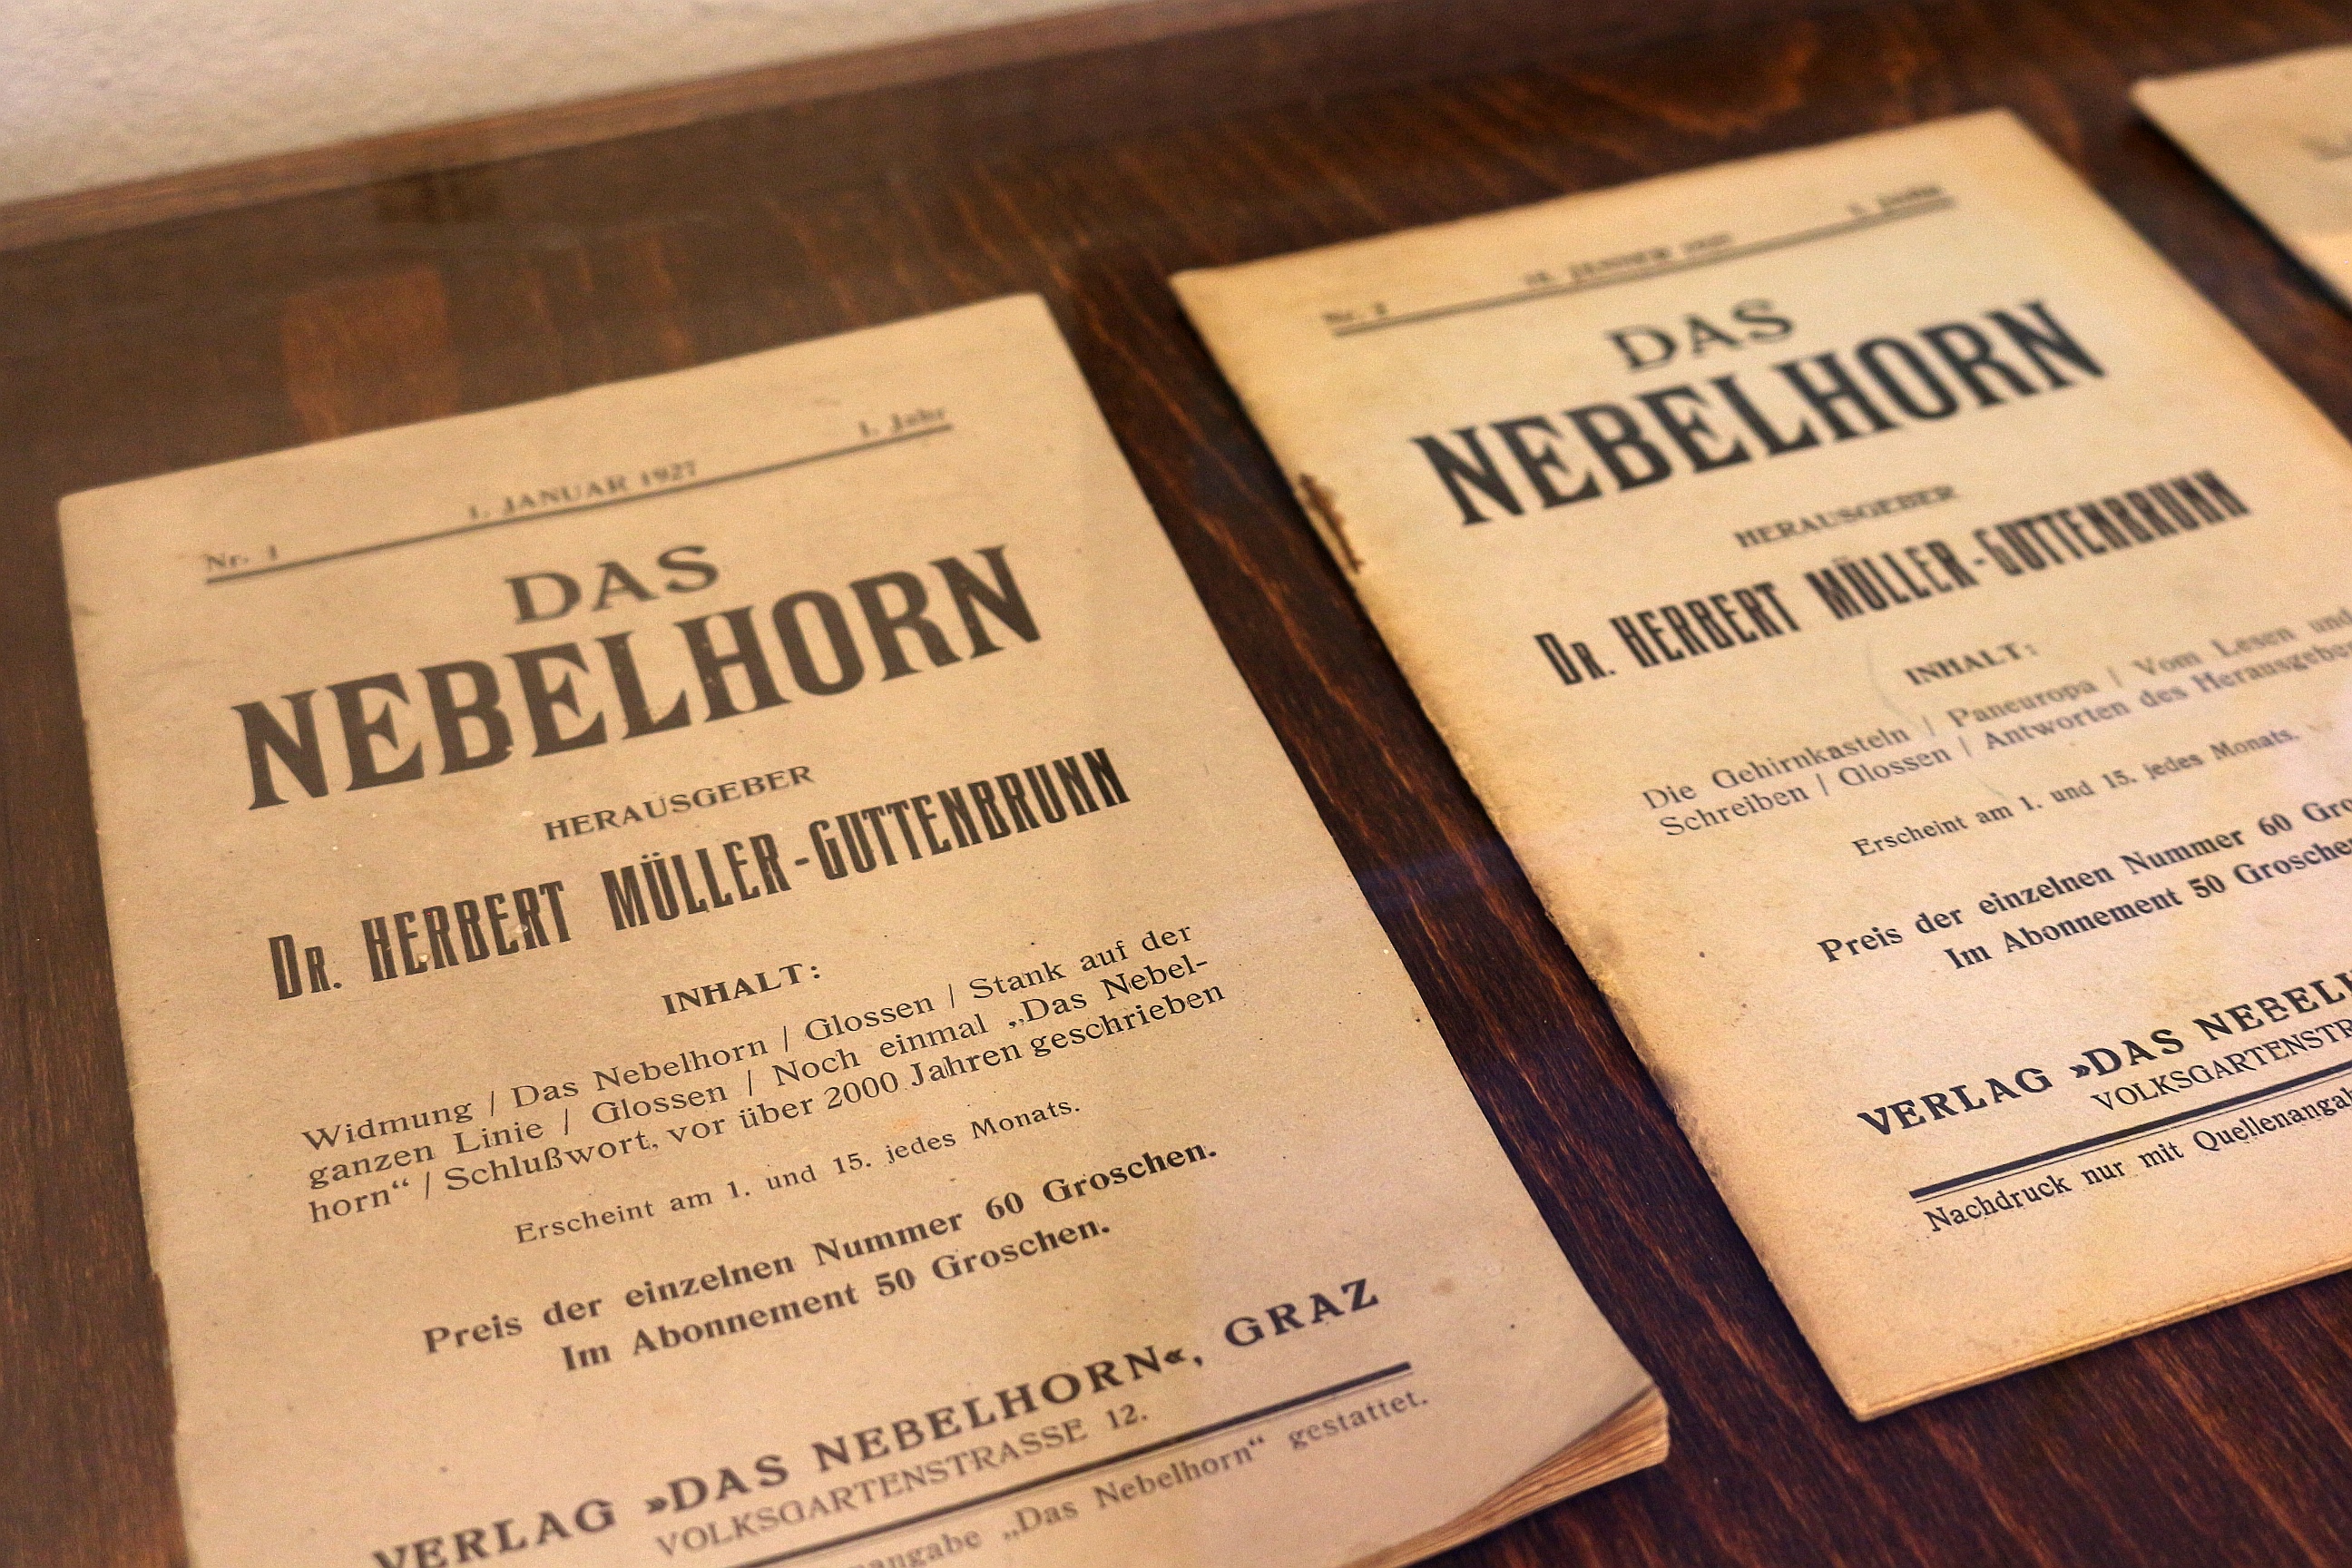 Auch die Magazine von Herbert Müller-Guttenbrunn sind Teil der Ausstellung